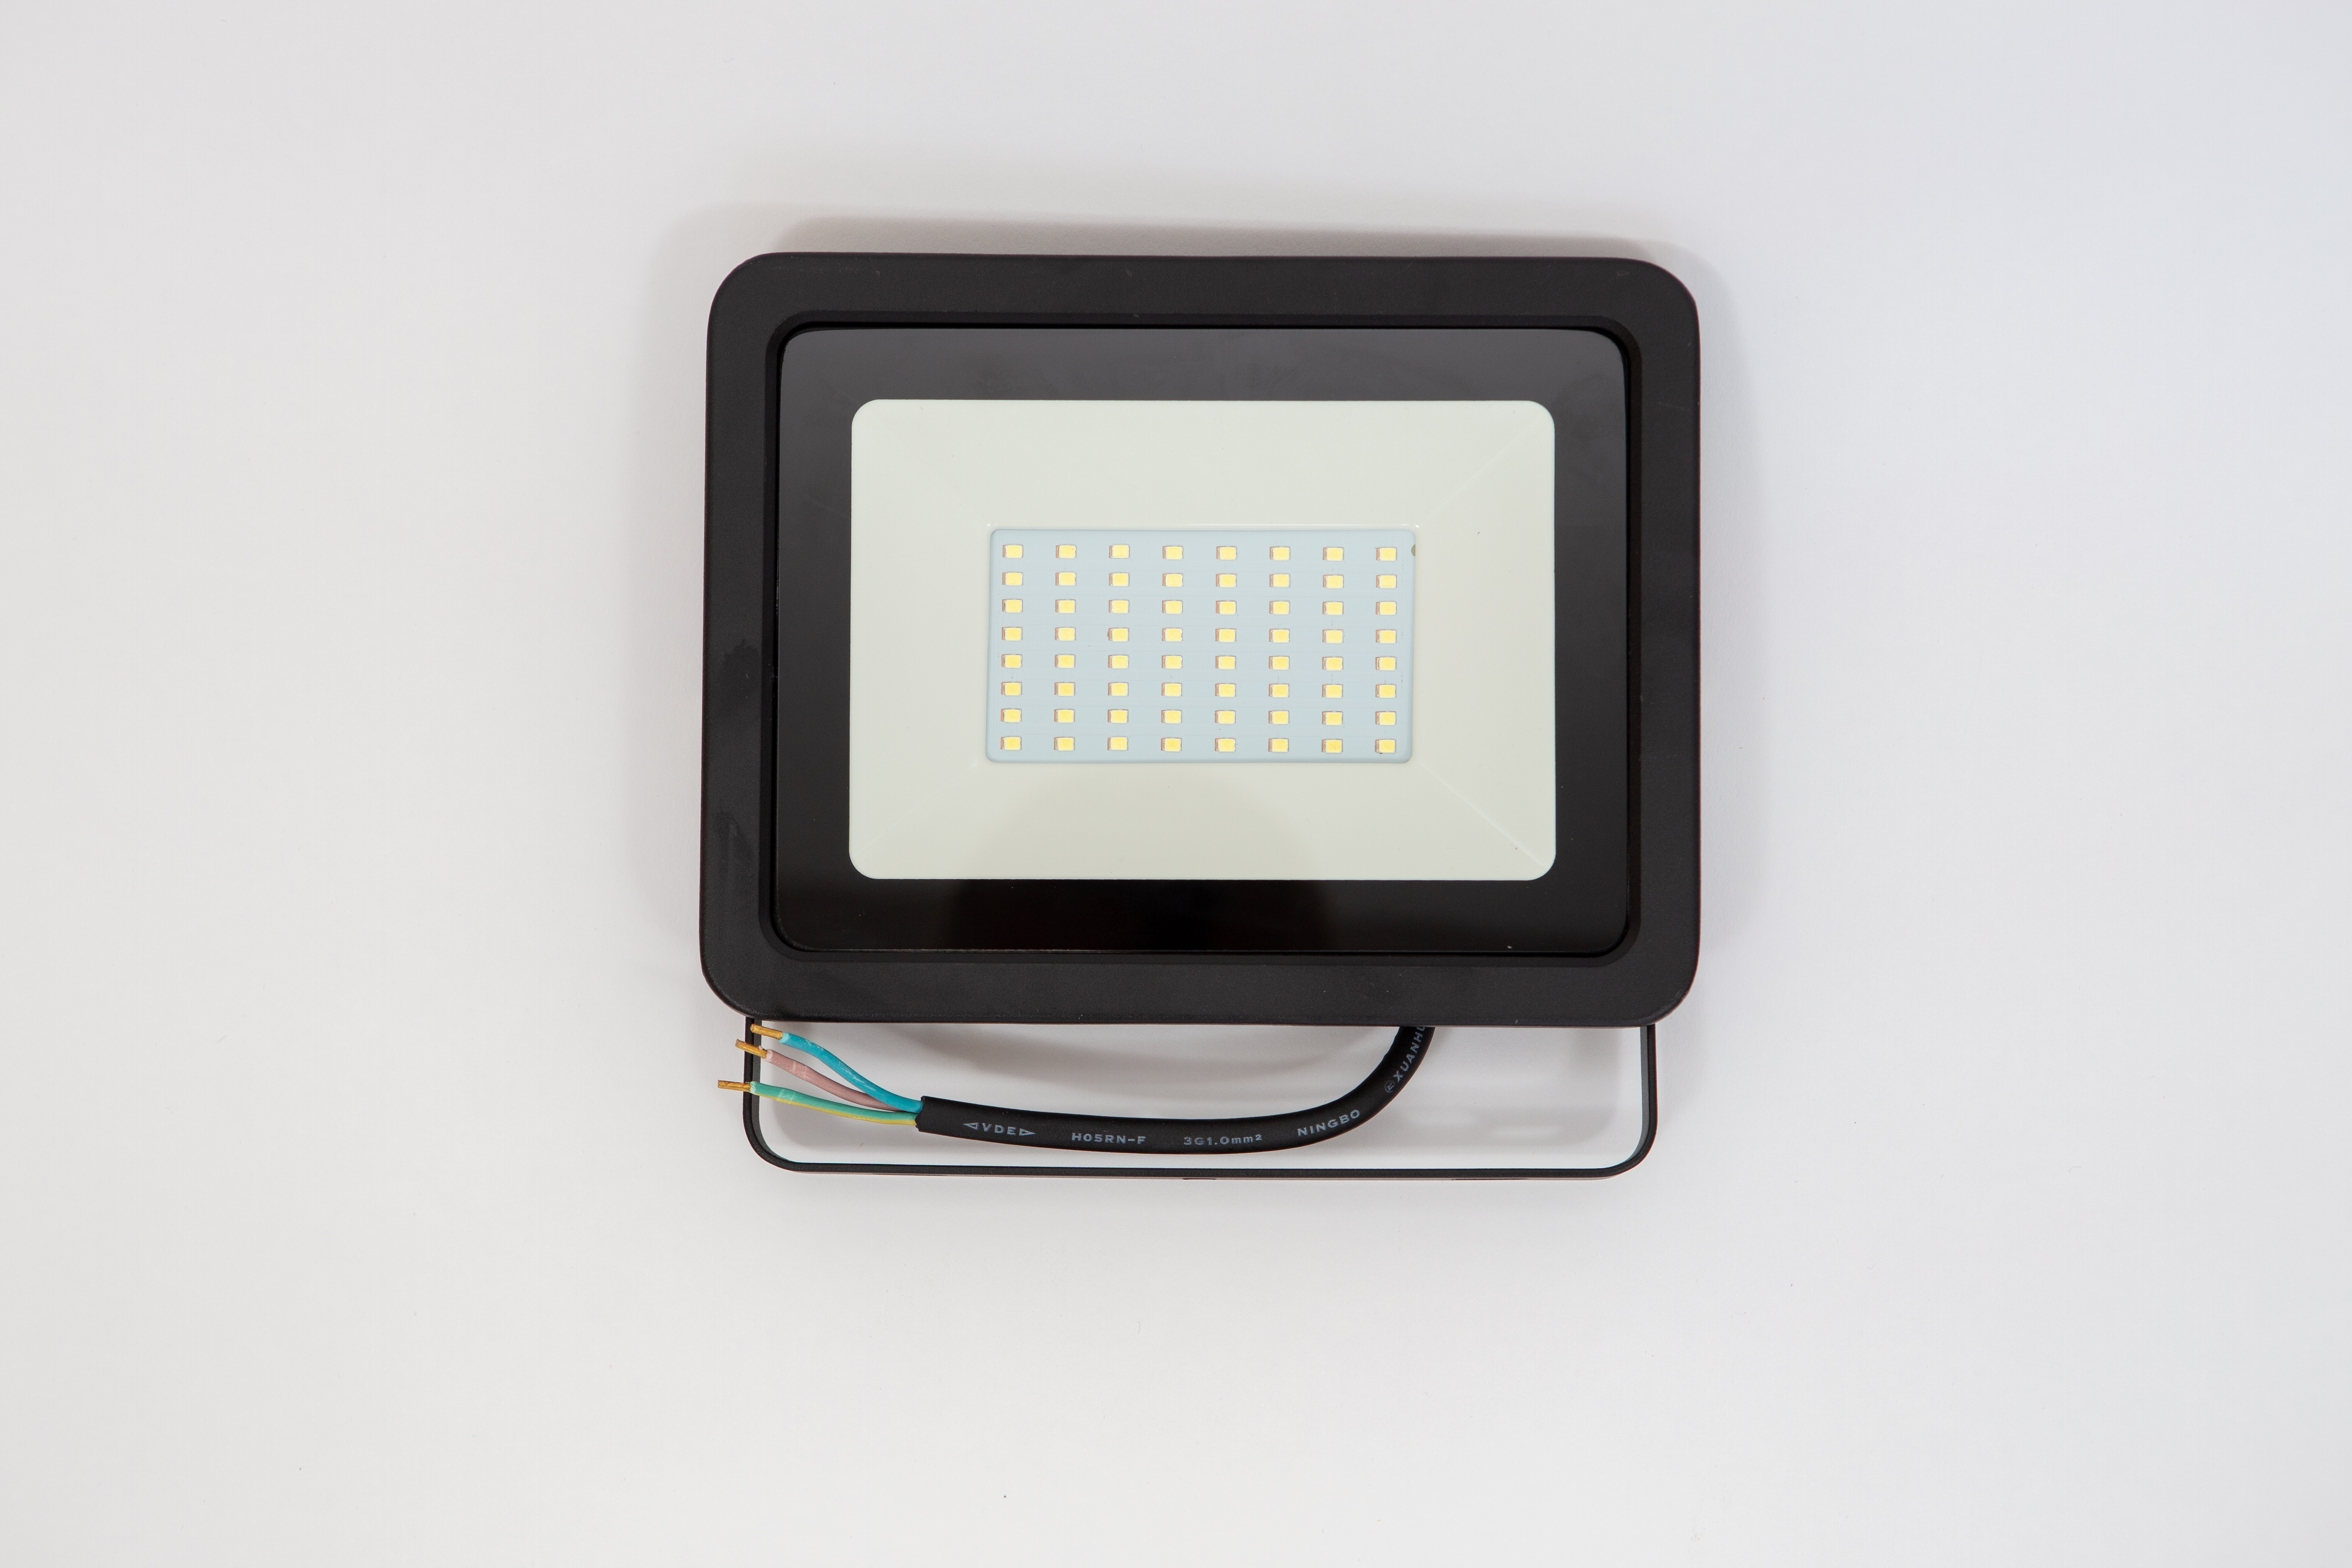 Proiector led 50w  lumina calda ( 3000 k ), ip 65 , clasa a++,carcasa aluminiu neagra [0]